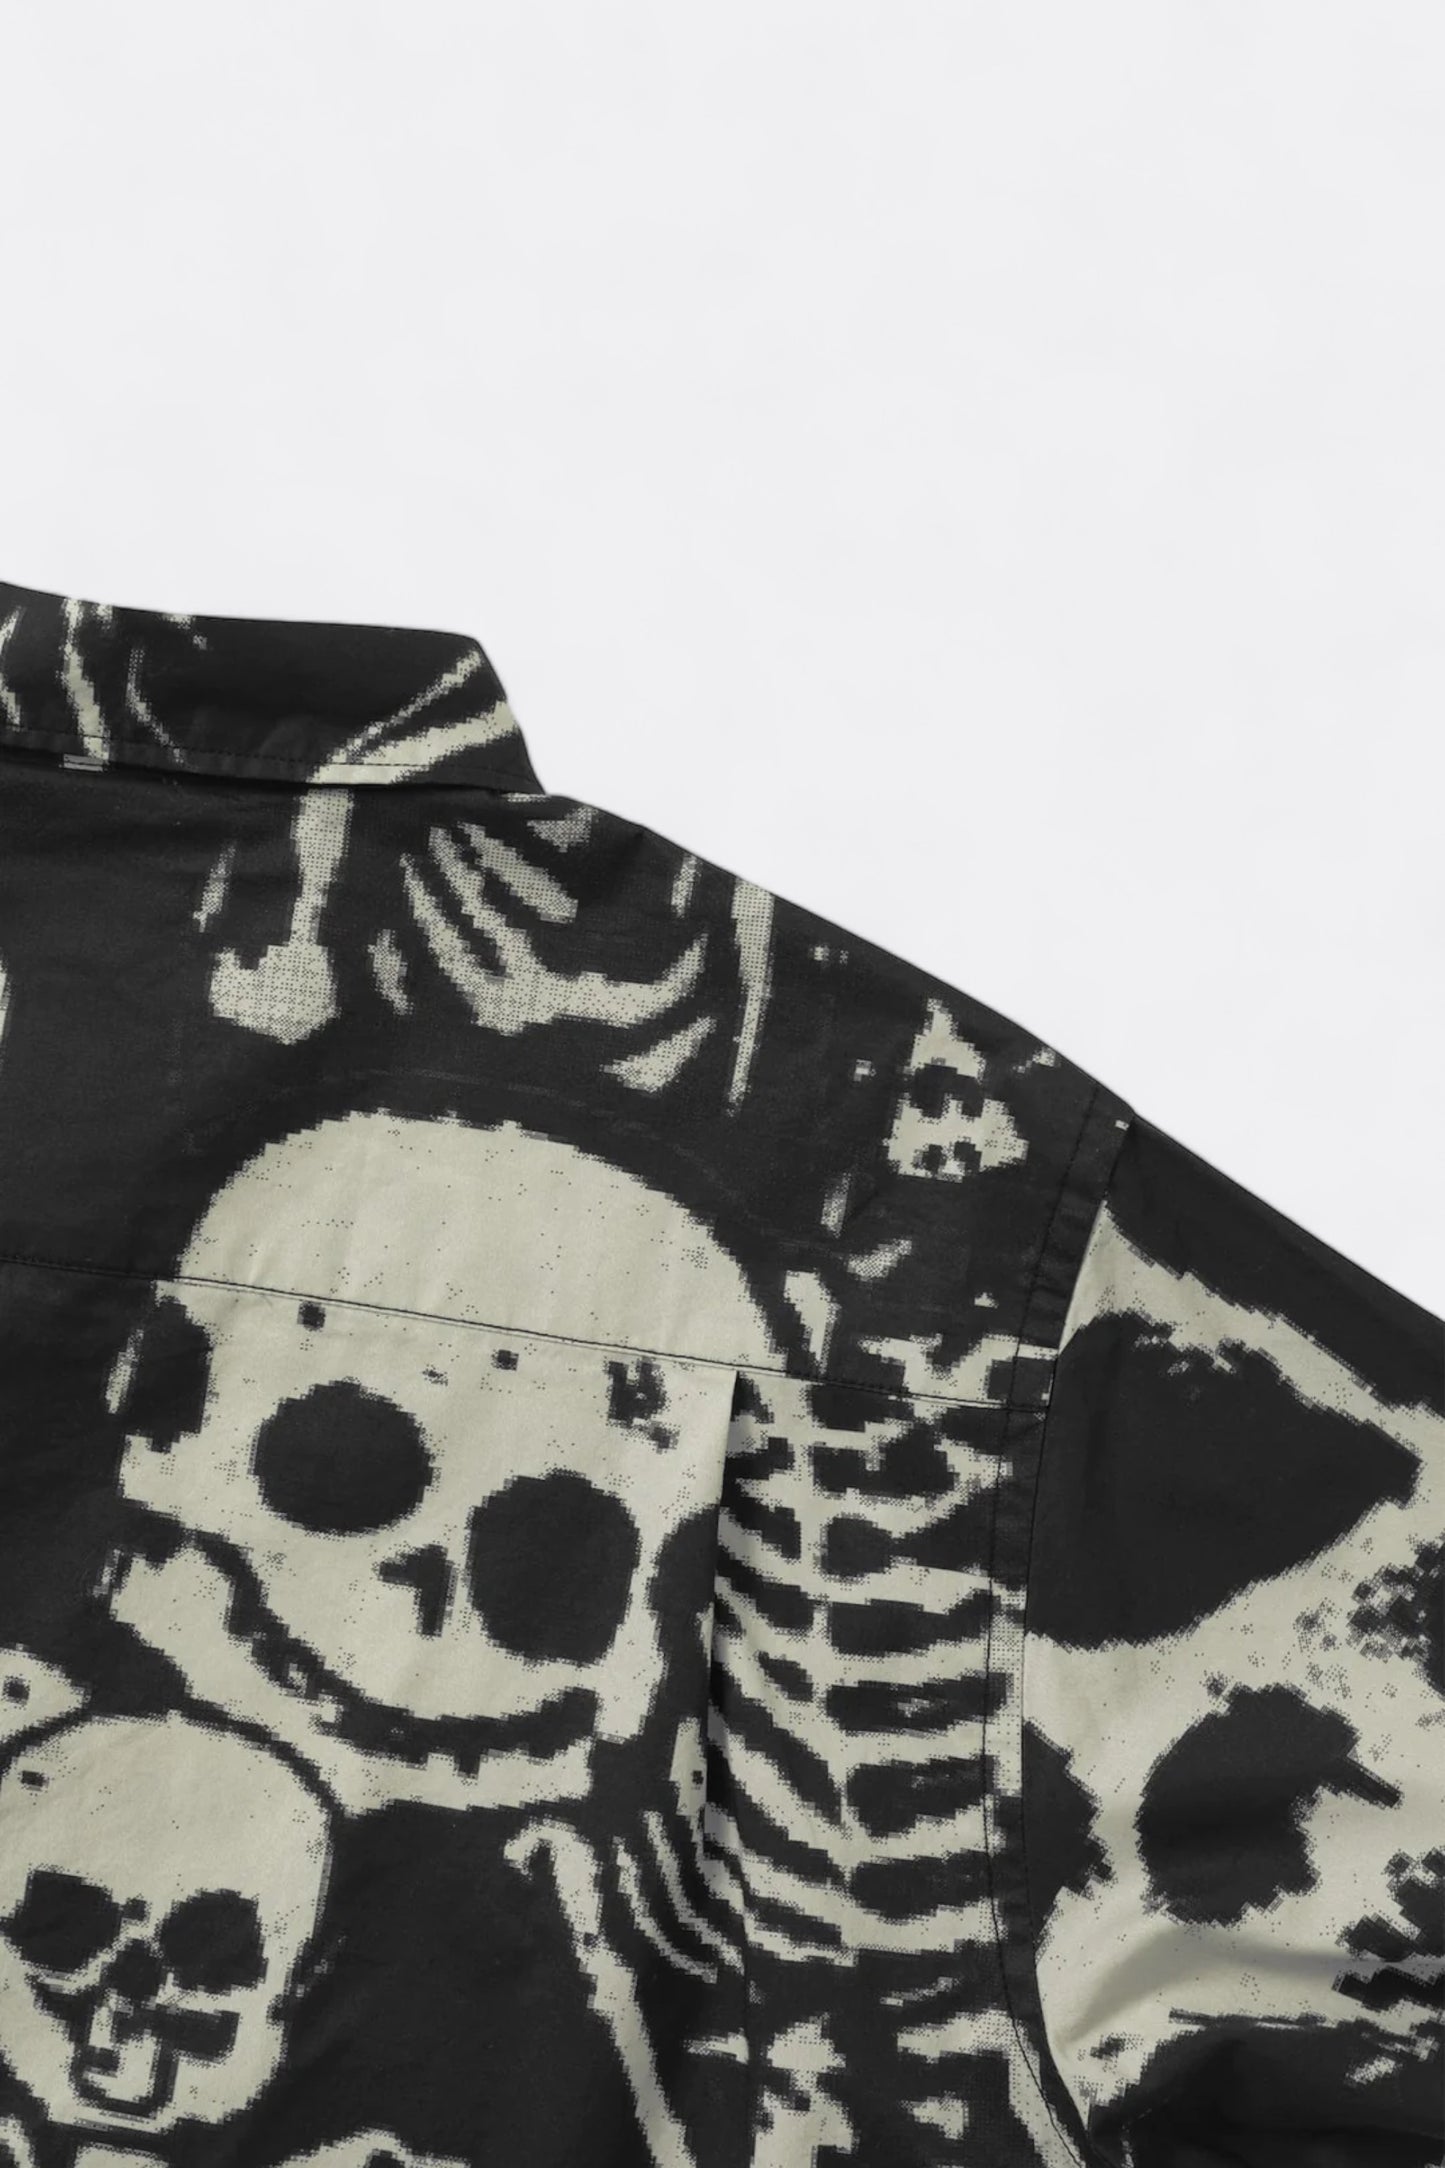 thisisneverthat - Skeletons Shirt (Washed Black)